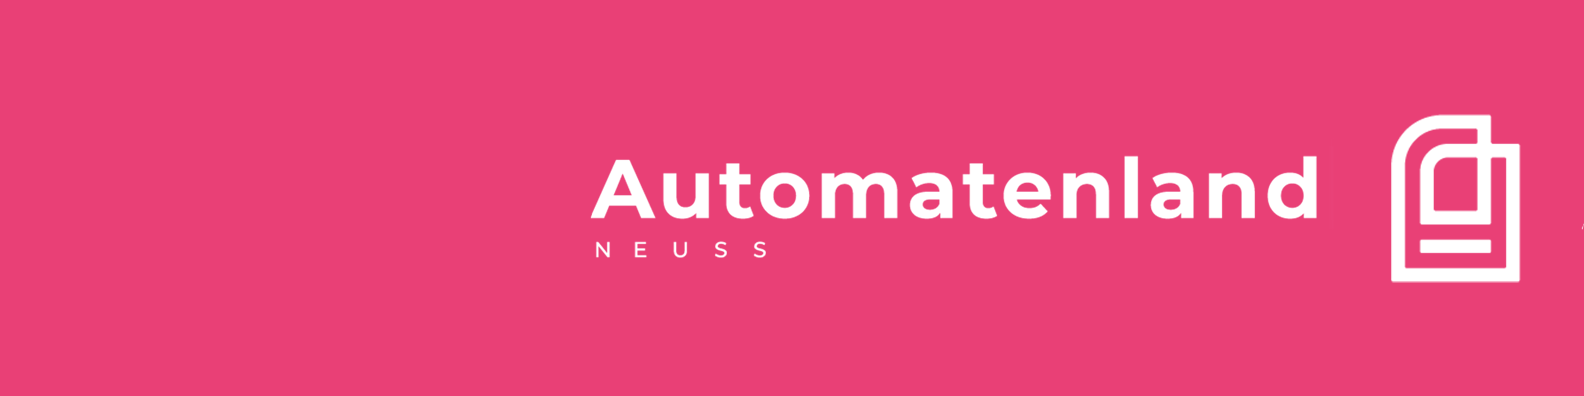 Automatenland / startup von Neuss / Background